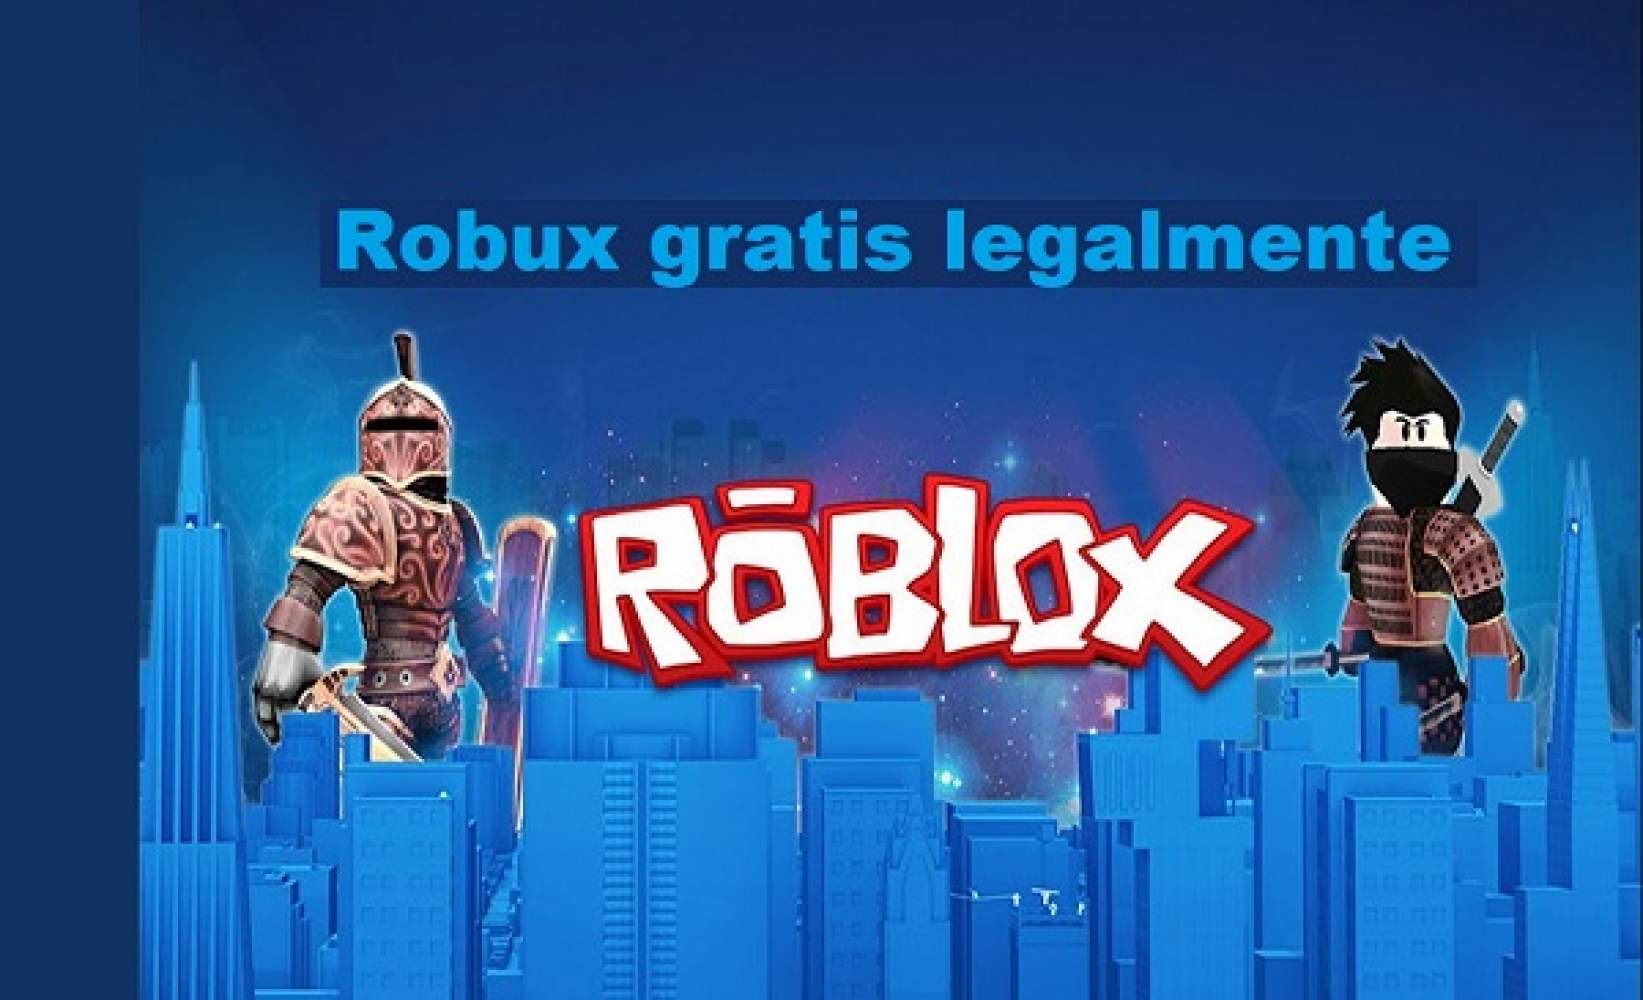 Arreglar no puede iniciar sesión en su cuenta de Roblox